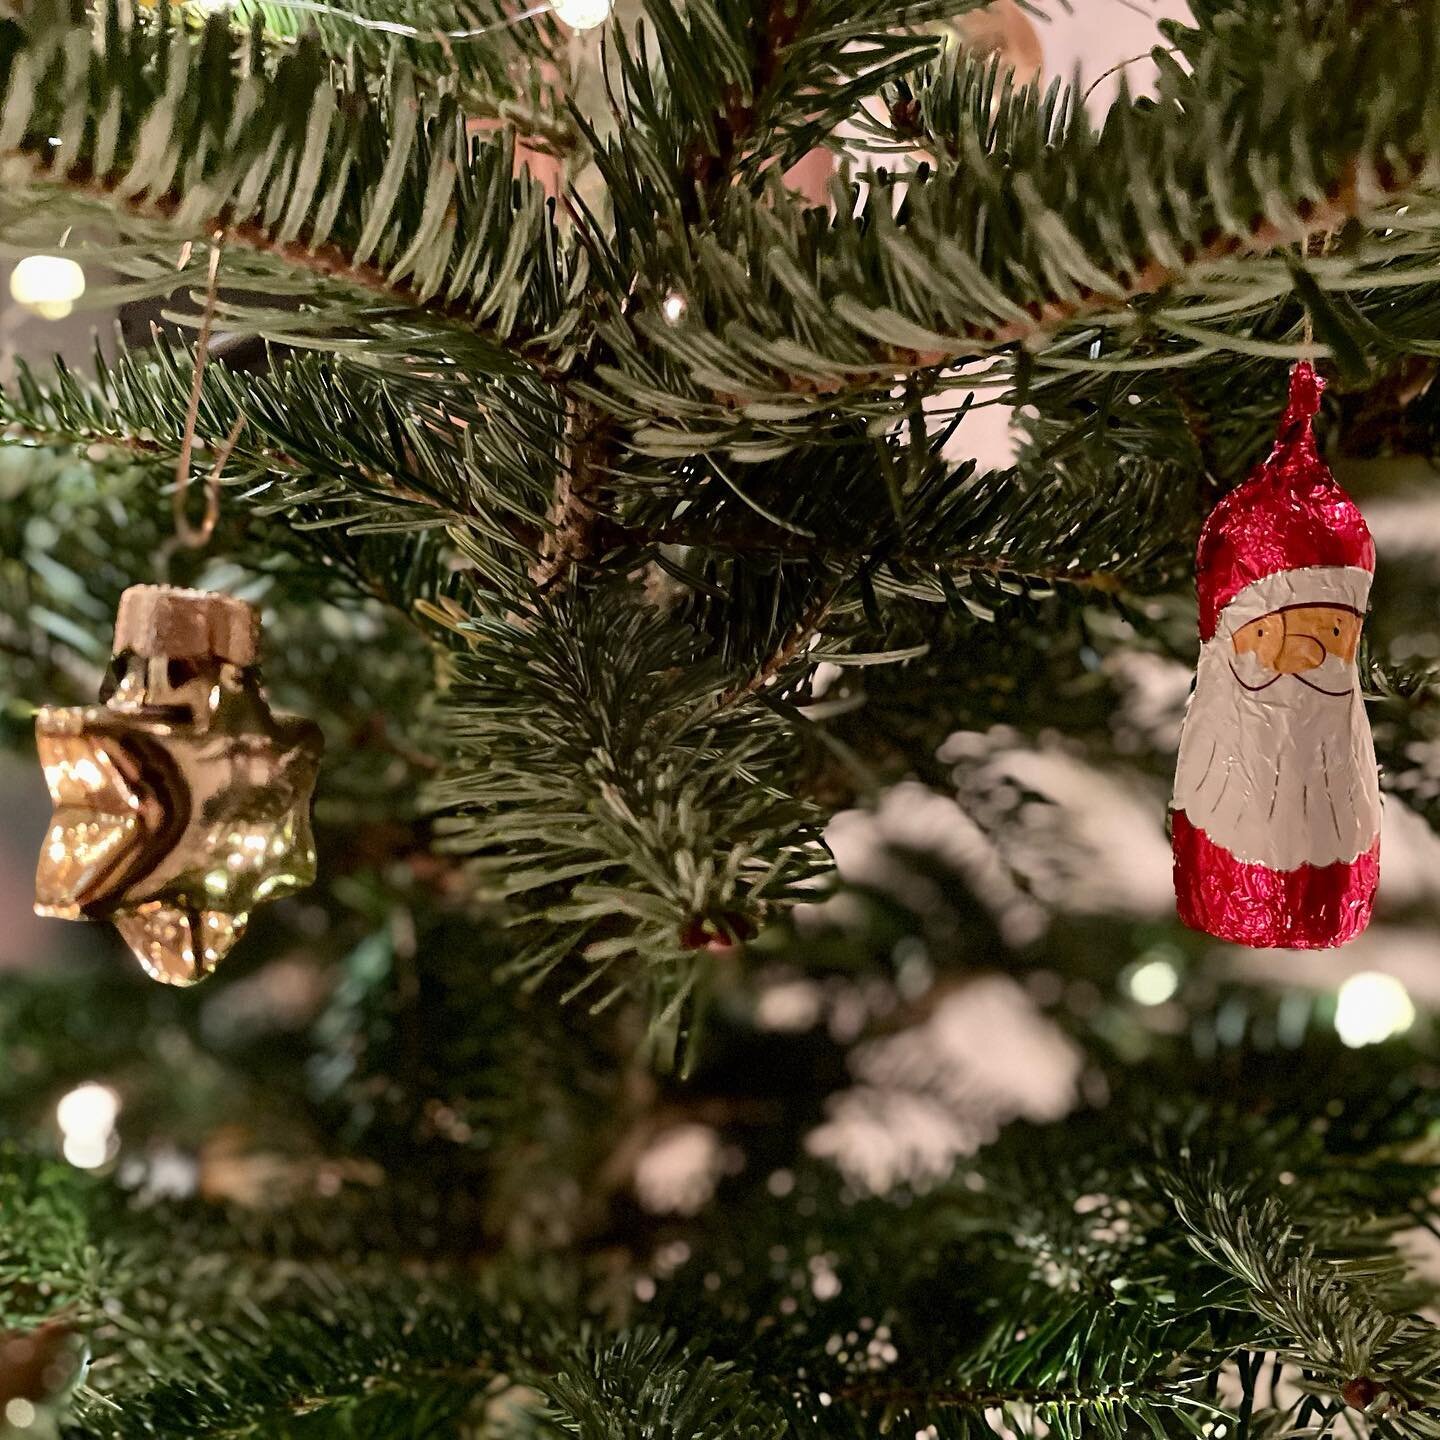 Jetzt ist auch unser @weihnachtsbaum_kunz Baum festlich geschm&uuml;ckt 🎄🤩
Wir w&uuml;nschen euch allen sch&ouml;ne, besinnliche Weihnachten und danken herzlich f&uuml;r die Kundentreue. Bis n&auml;chstes Jahr am Weihnachtsbaumverkauf in B&uuml;eti